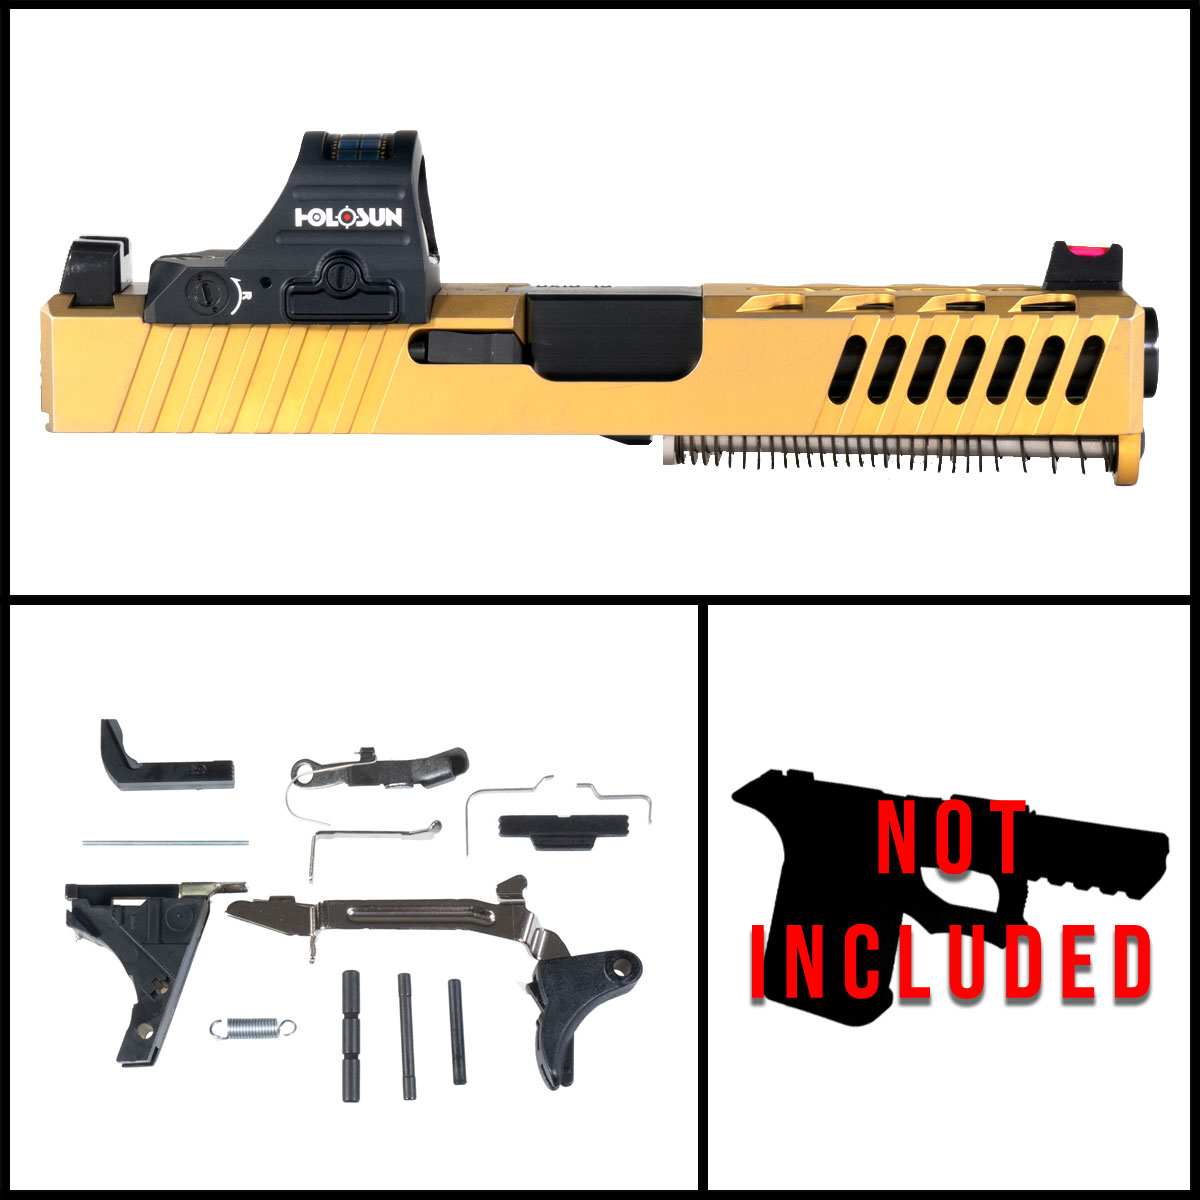 OTD 'Aurum' 9mm Full Pistol Build Kit (Everything Minus Frame) - Glock 19 Compatible